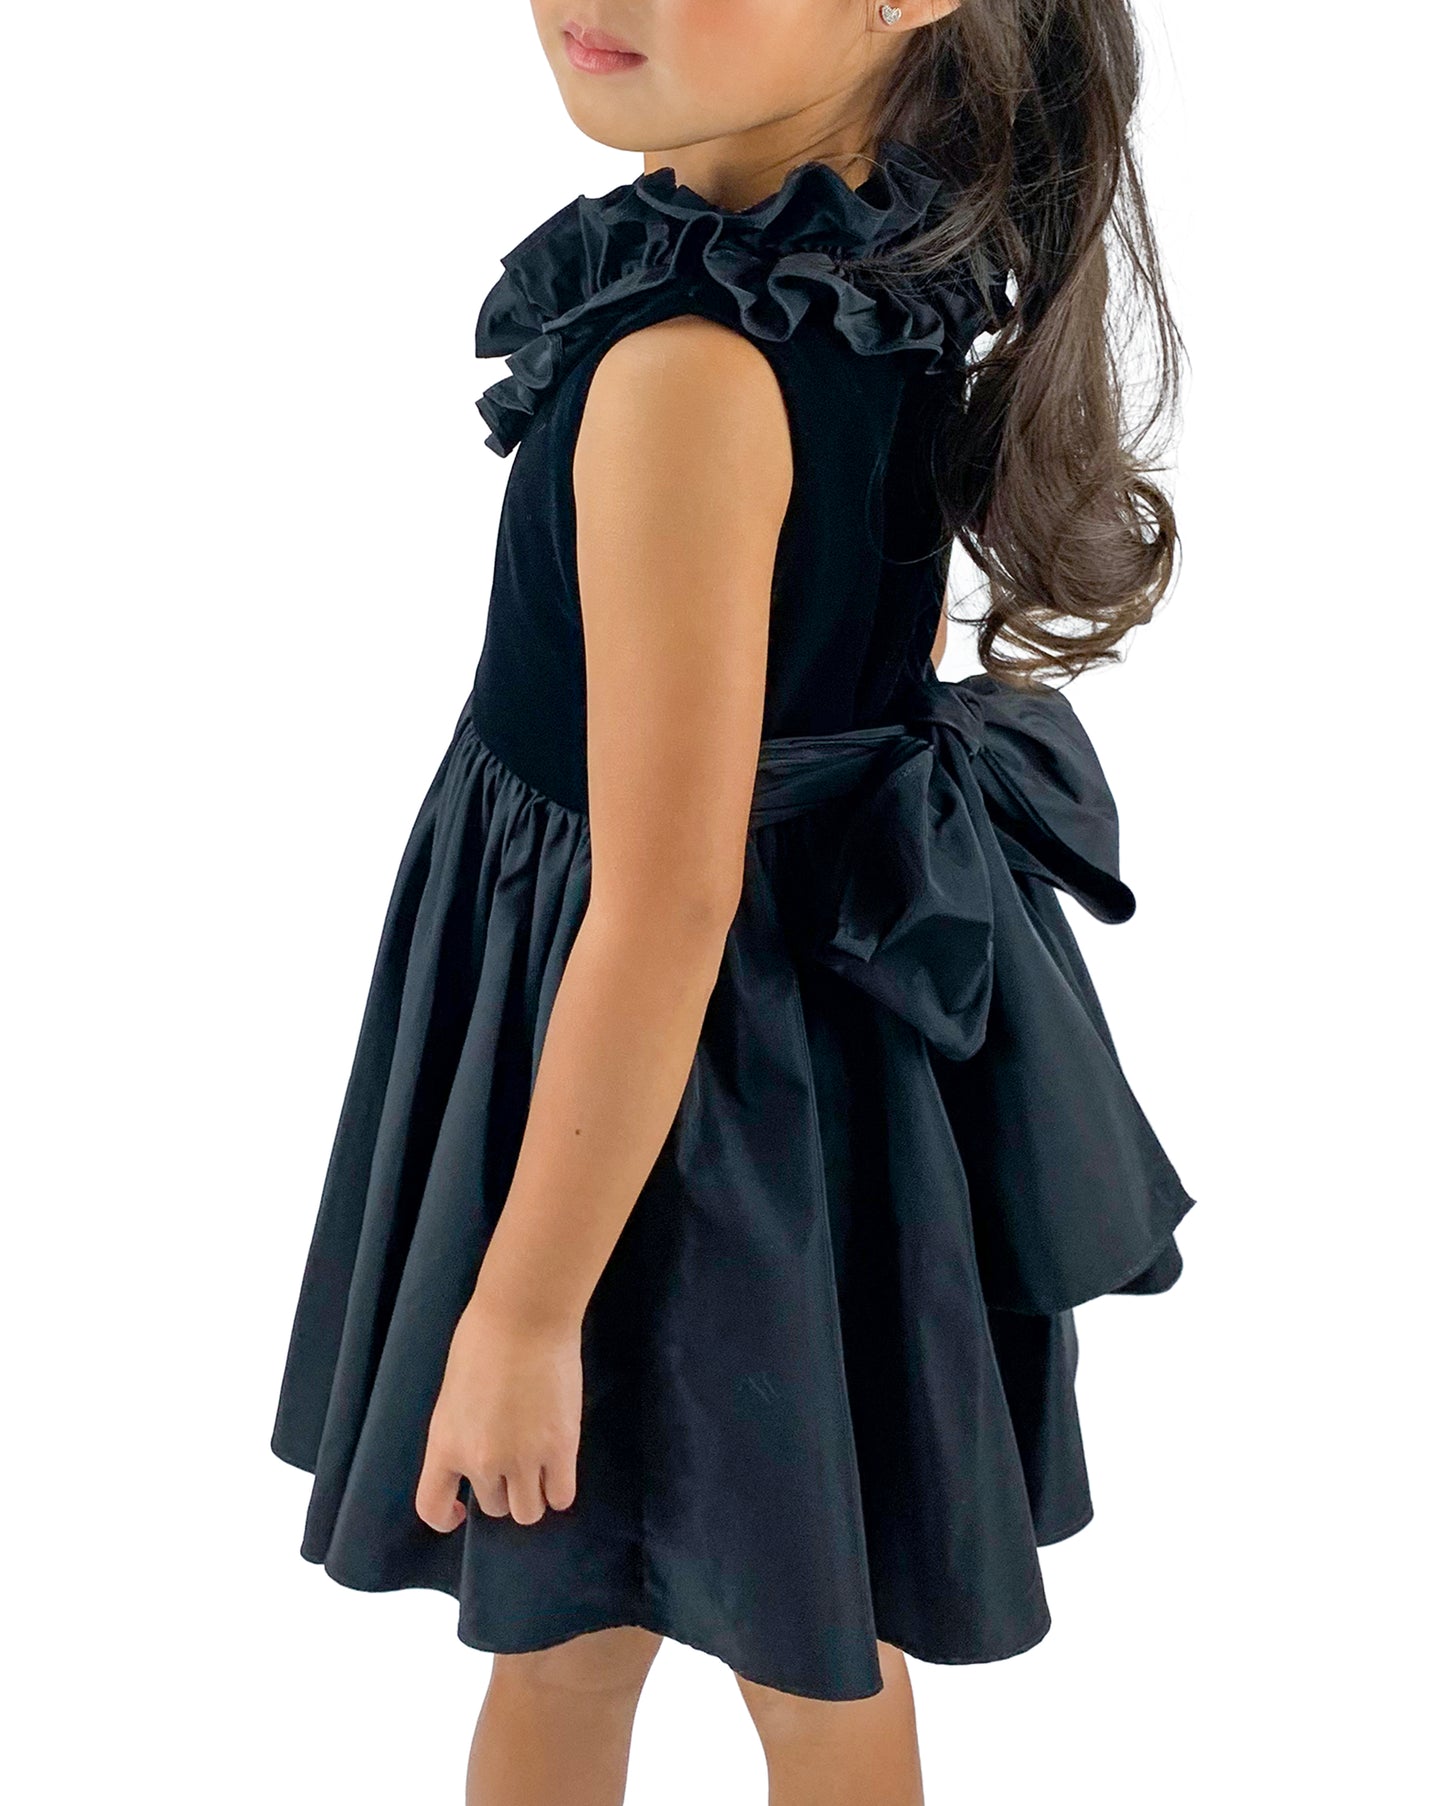 Helena and Harry Girl's Black Velvet/Taffeta Ruffle Neck Dress